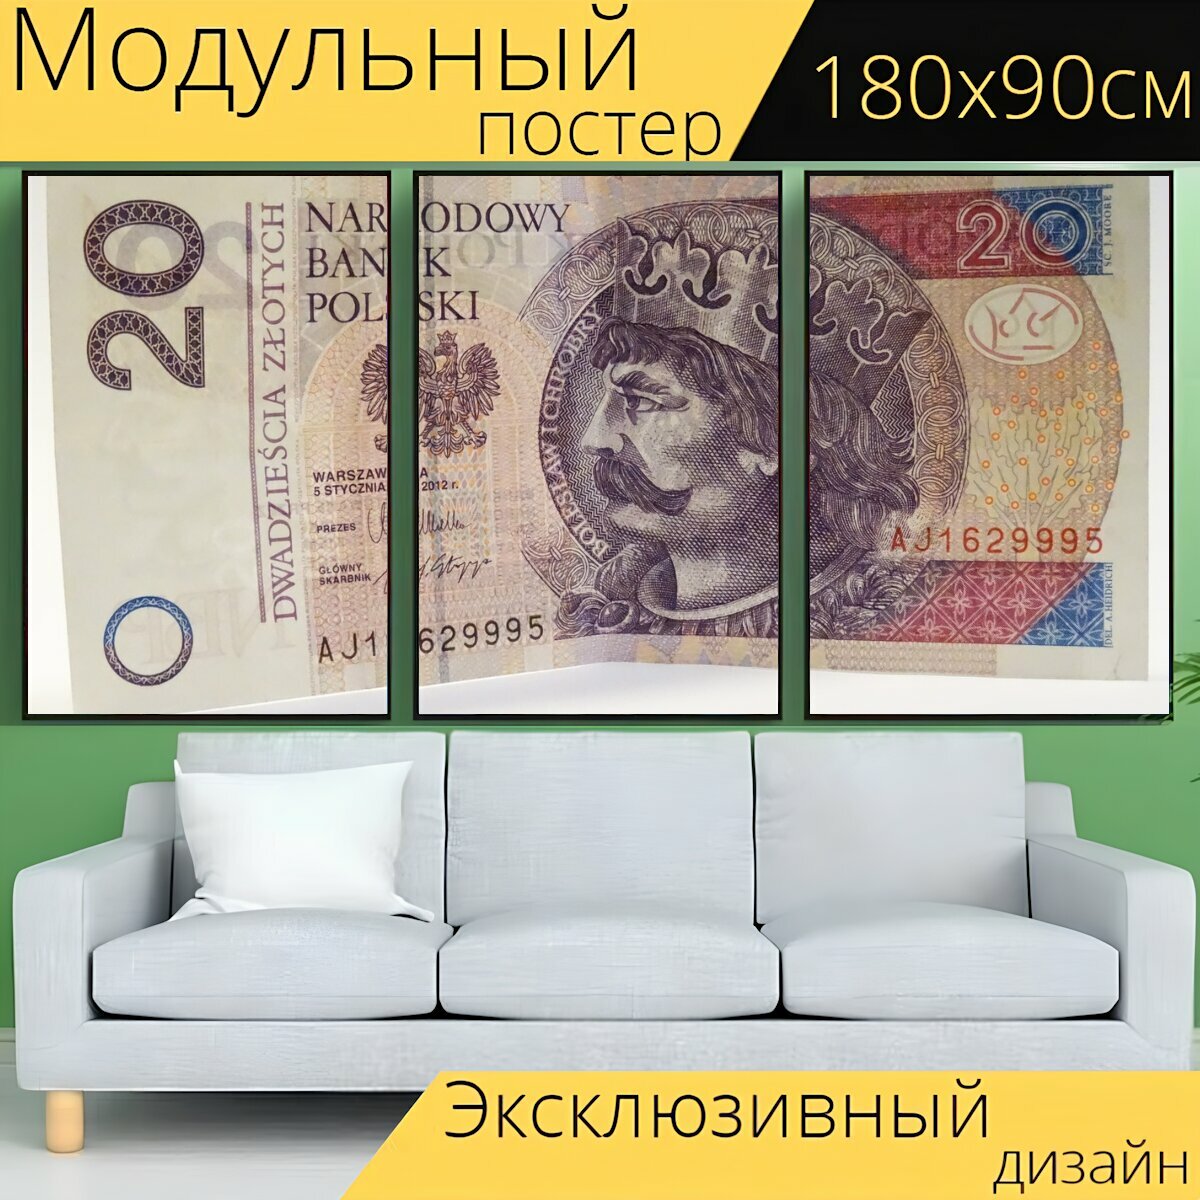 Модульный постер "Деньги, кассовый аппарат, валюта" 180 x 90 см. для интерьера